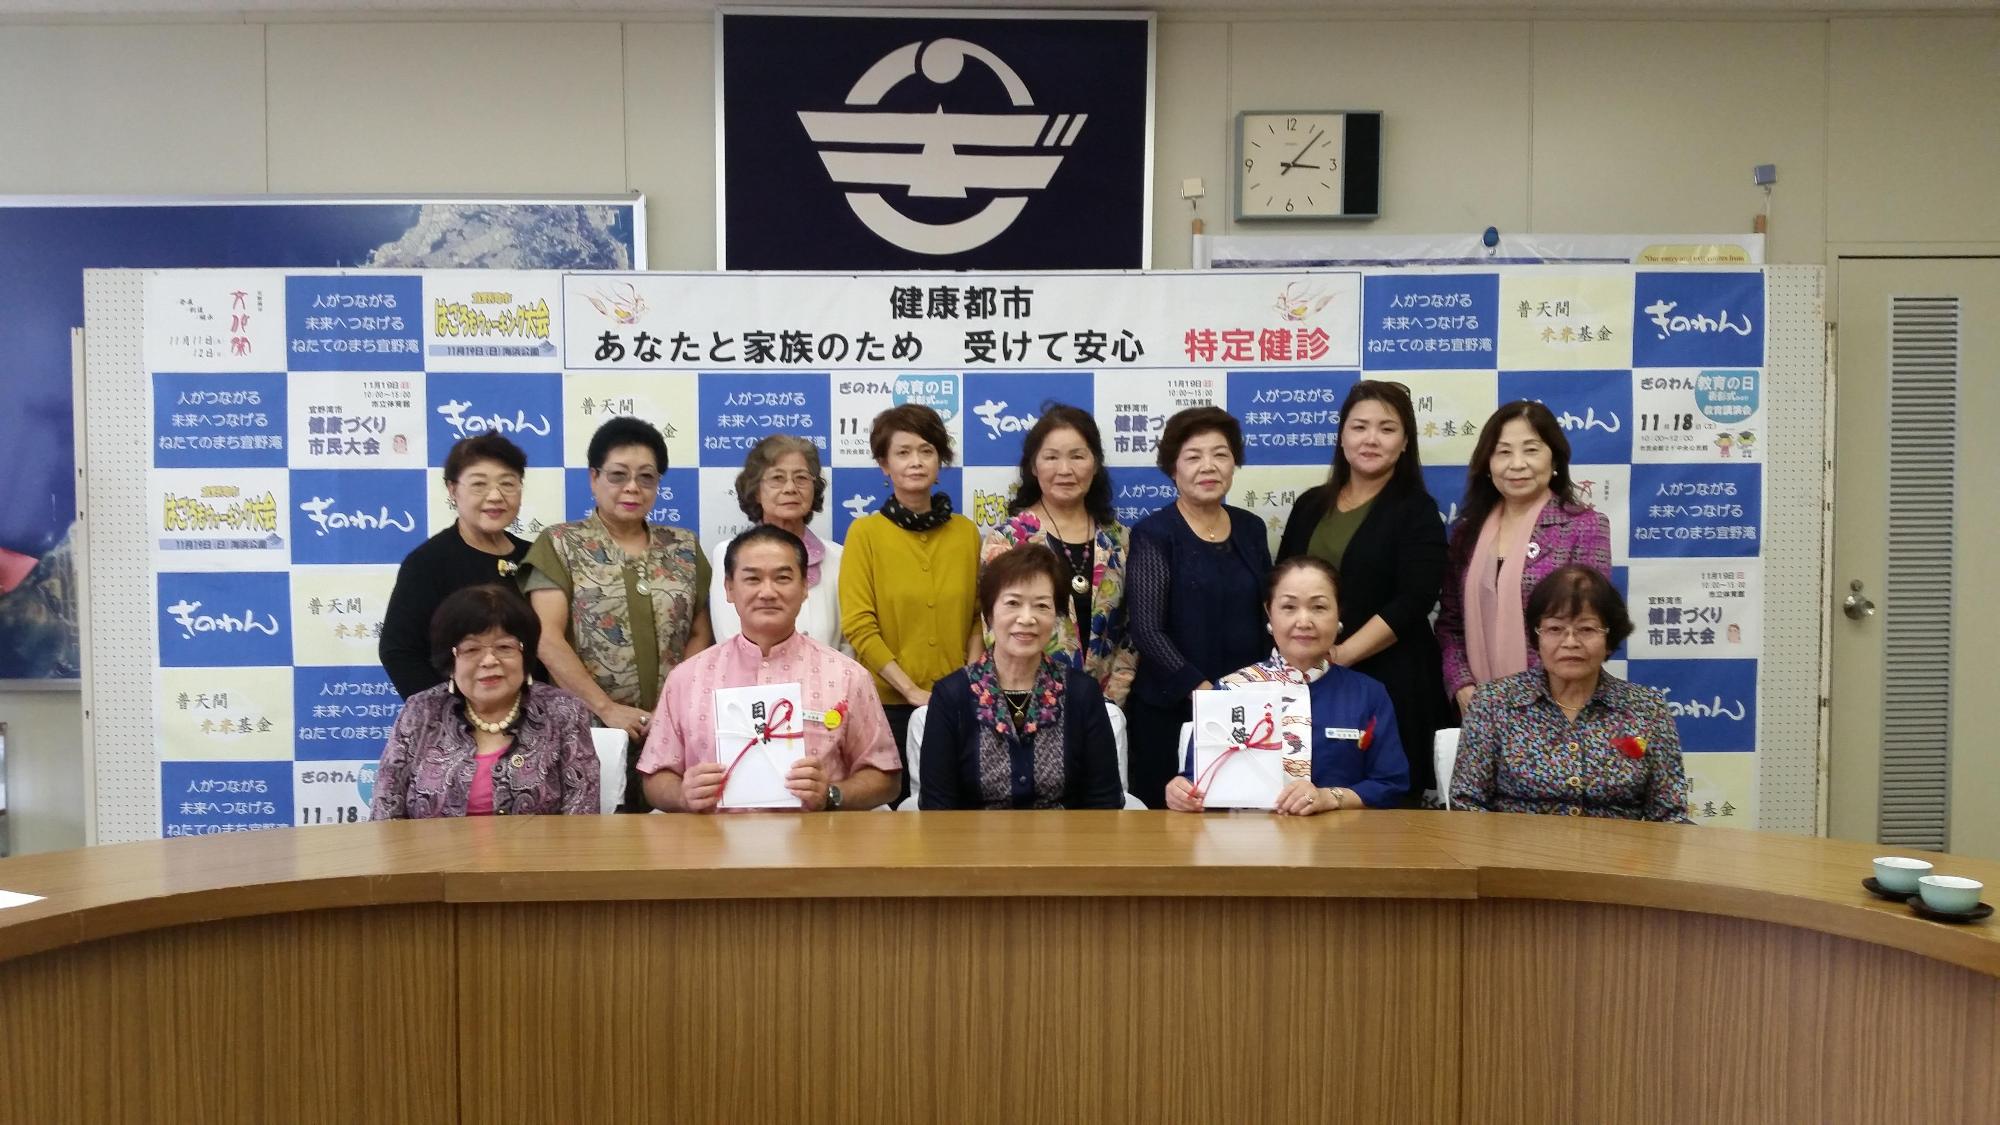 前列に5名の方々が座り、うち佐喜眞市長と青い服を着た女性が目録を持っており、後方には8名の関係者の方々が笑顔で写っている集合写真